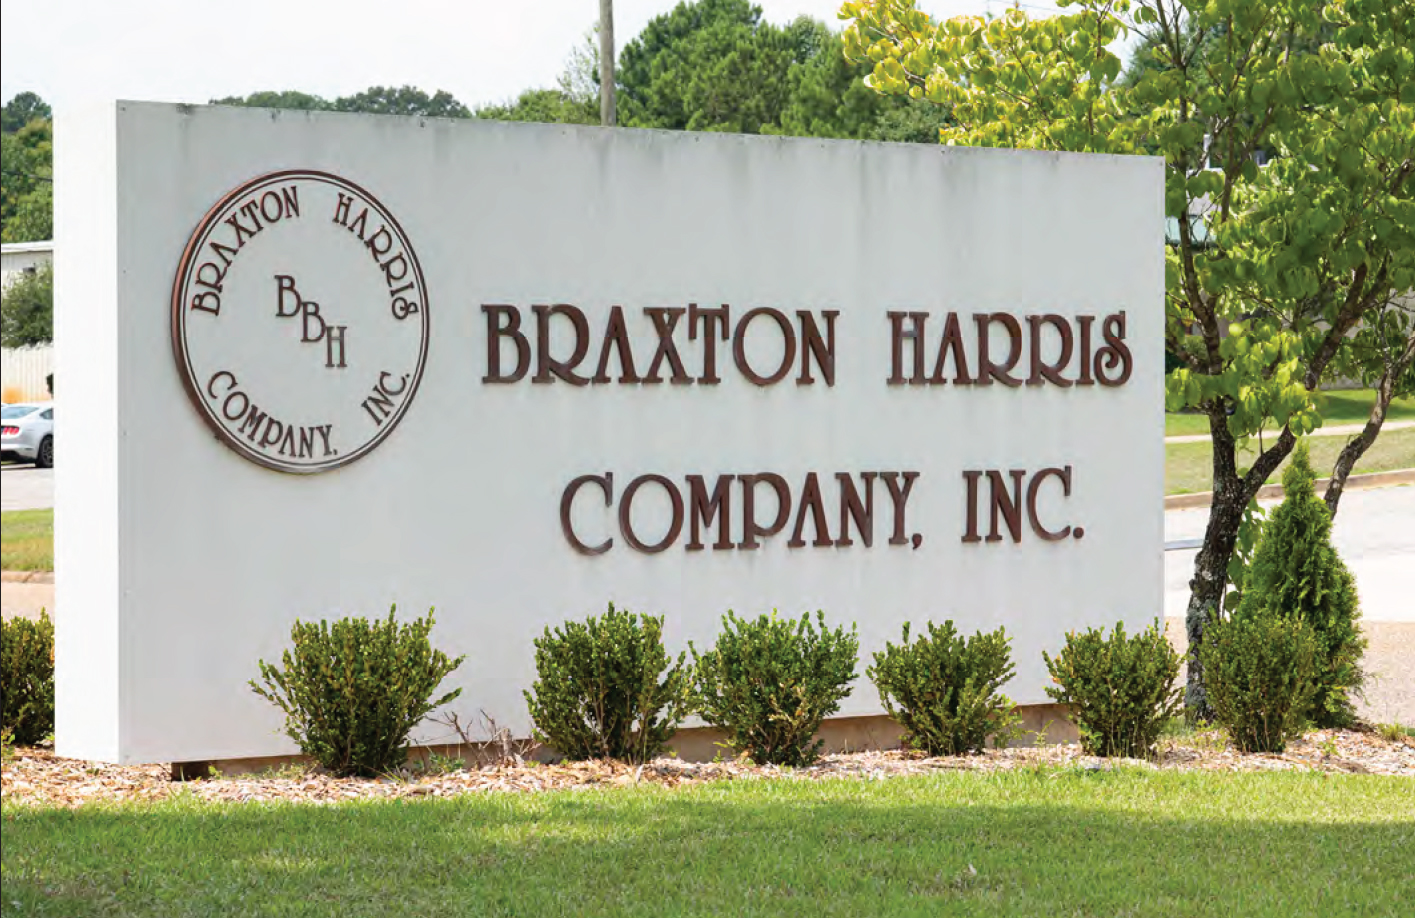 WHP22 - Braxton Harris Company